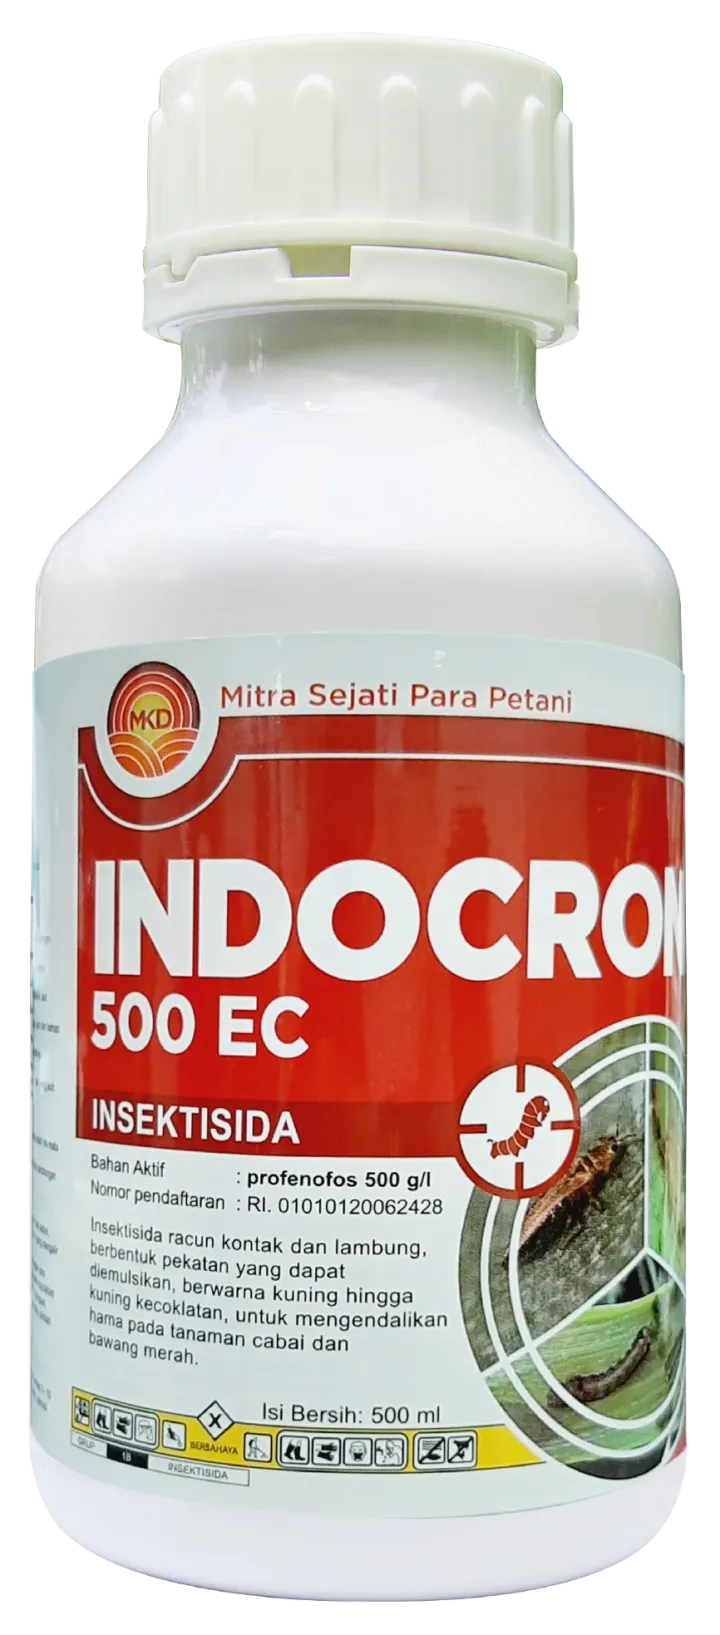 INDOCRON 500 EC